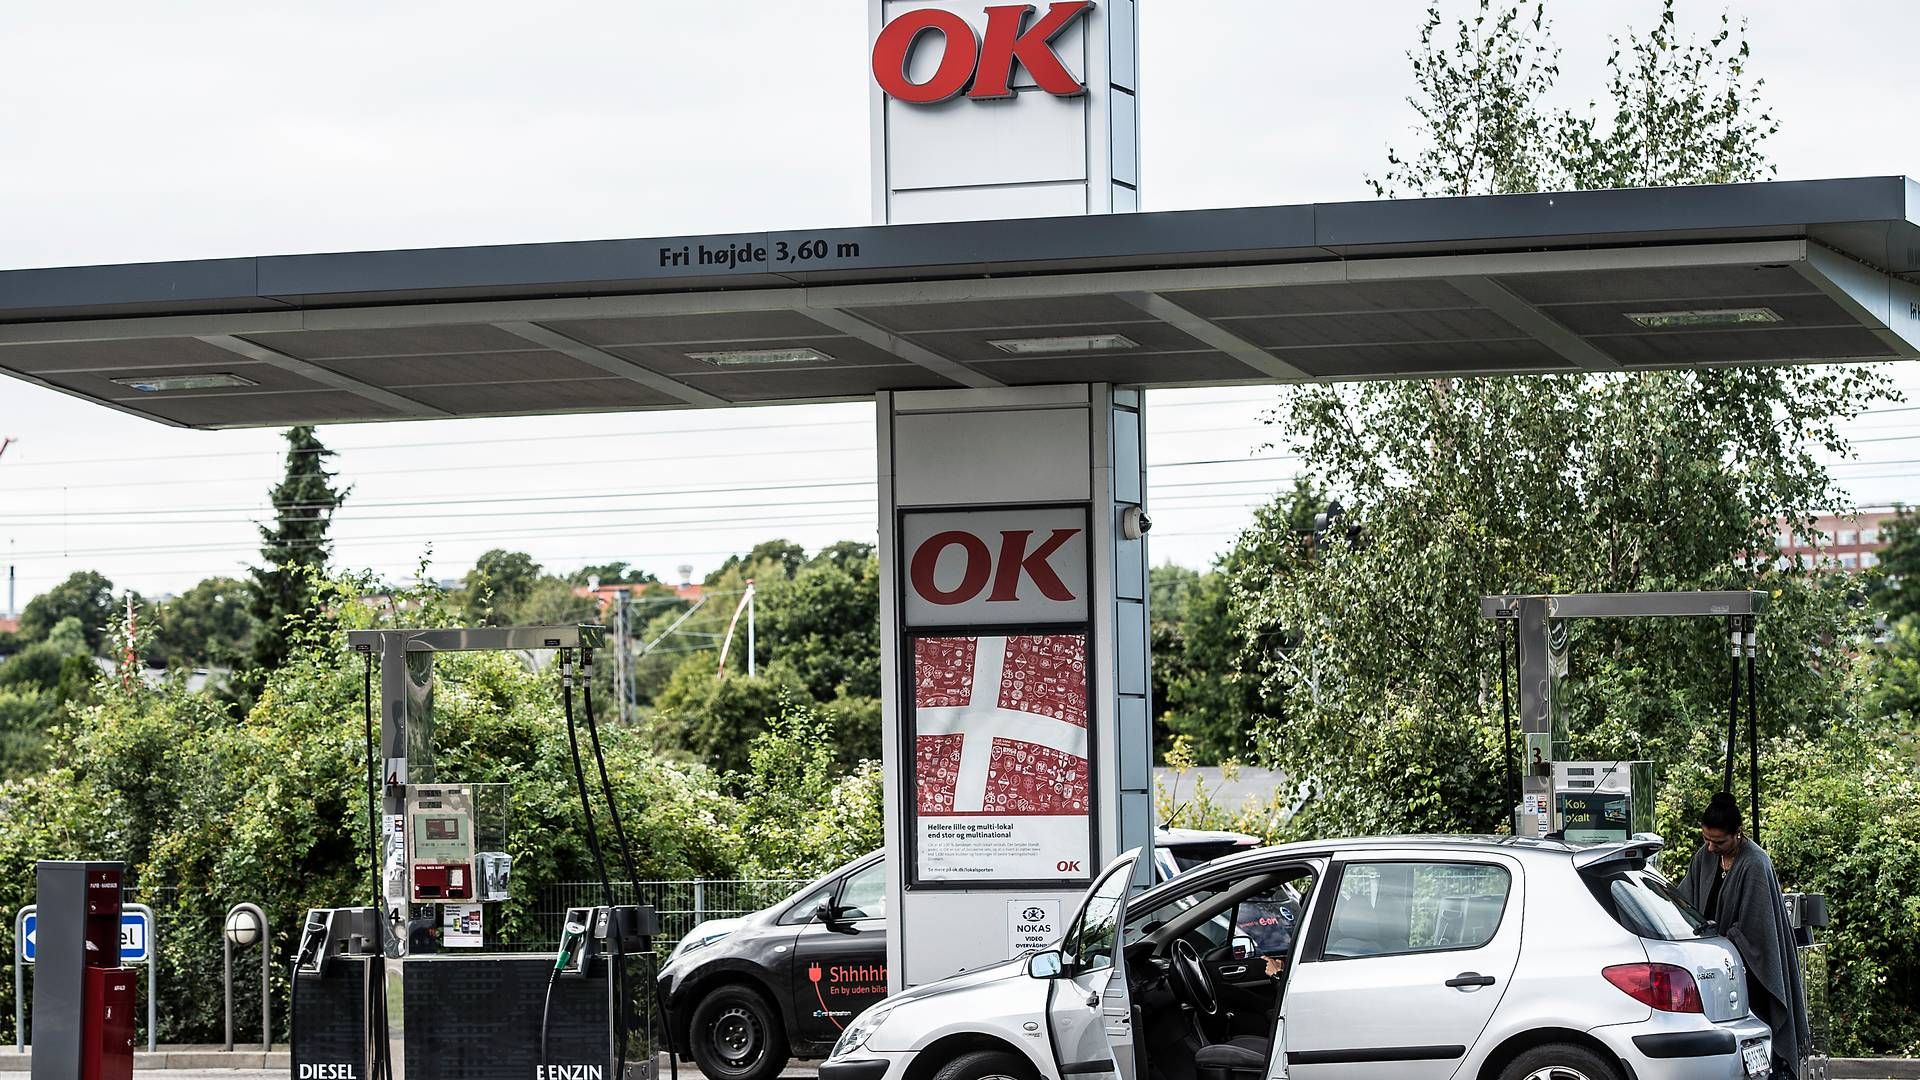 16,89 kr. koster en liter benzin hos OK. | Foto: Mogens Flindt/Ritzau Scanpix